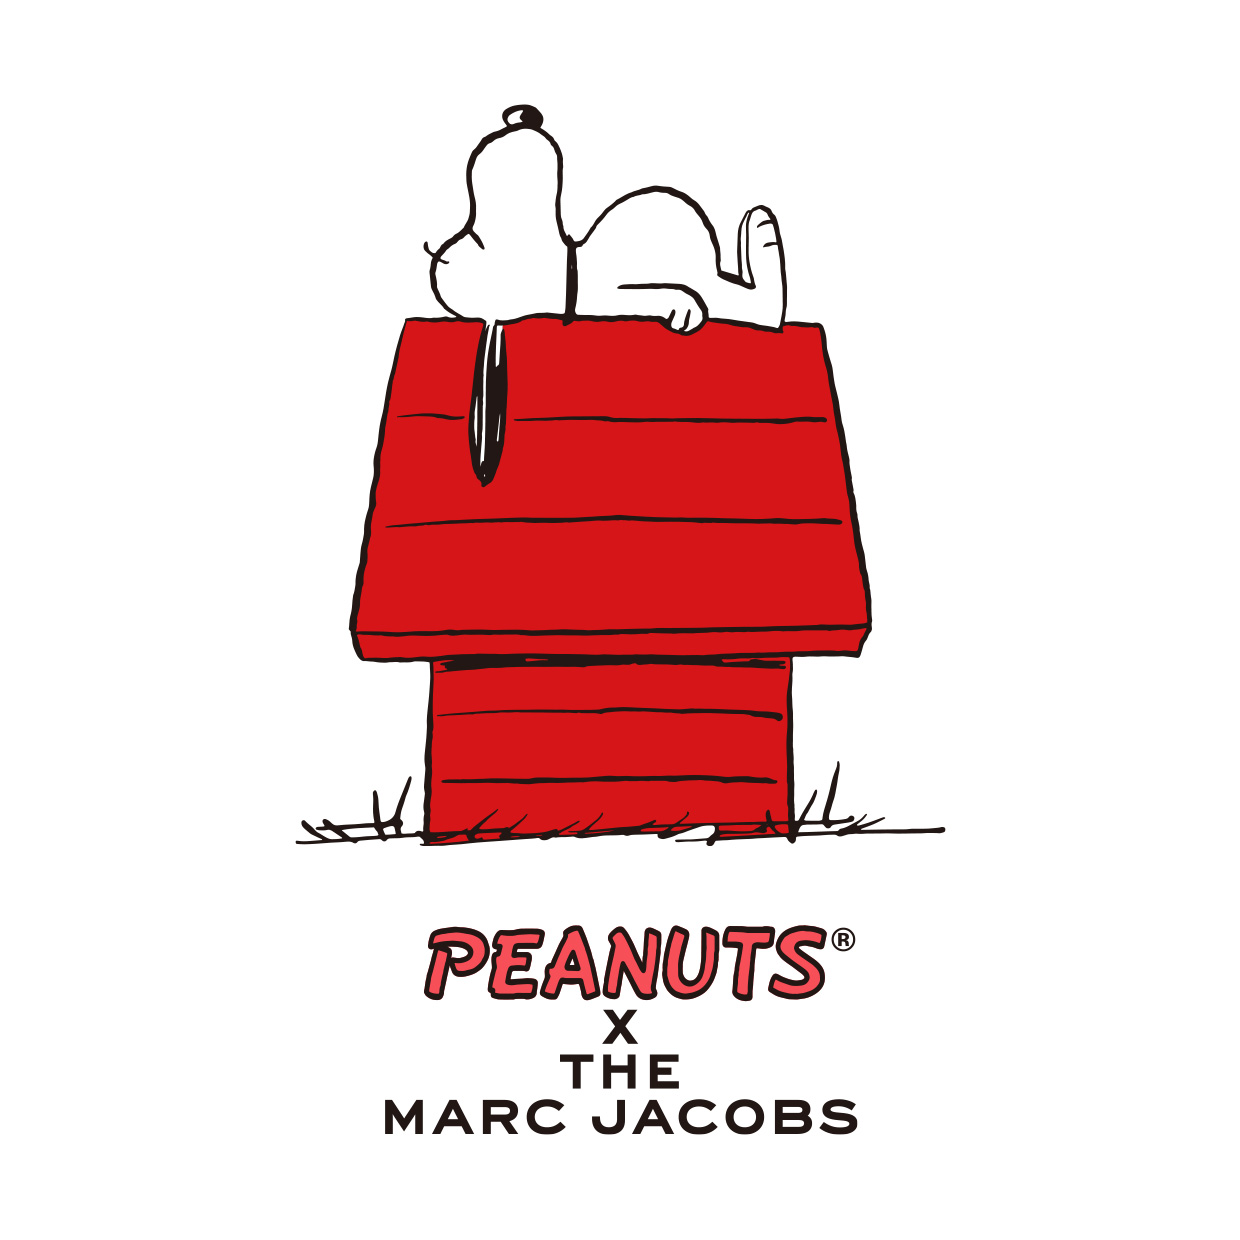 マーク ジェイコブス より Peanuts The Marc Jacobs の 特設ポップアップストアが渋谷parcoに登場 マーク ジェイコブス ジャパン株式会社のプレスリリース